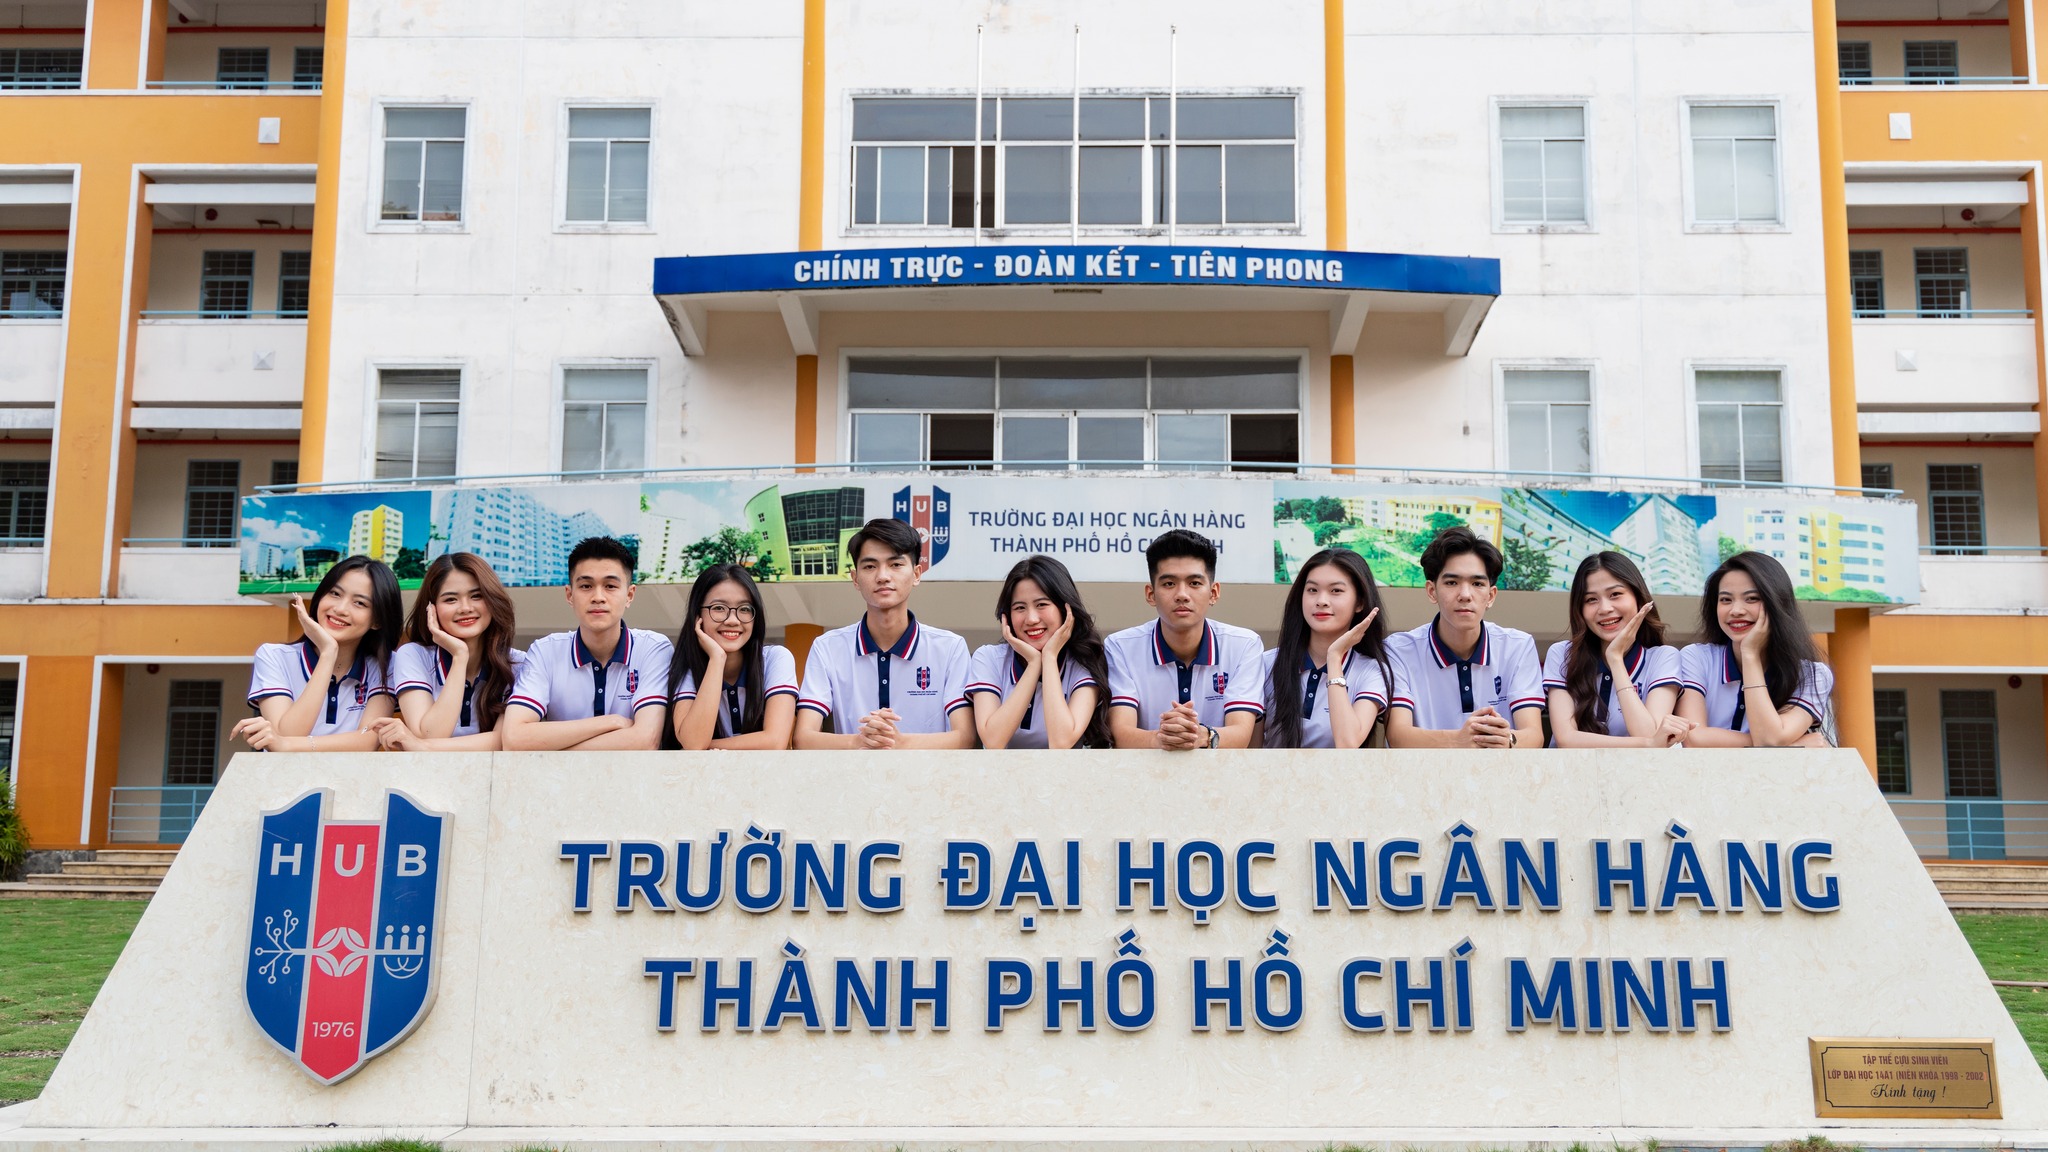 Trường Đại học Ngân hàng TP. Hồ Chí Minh – HUB